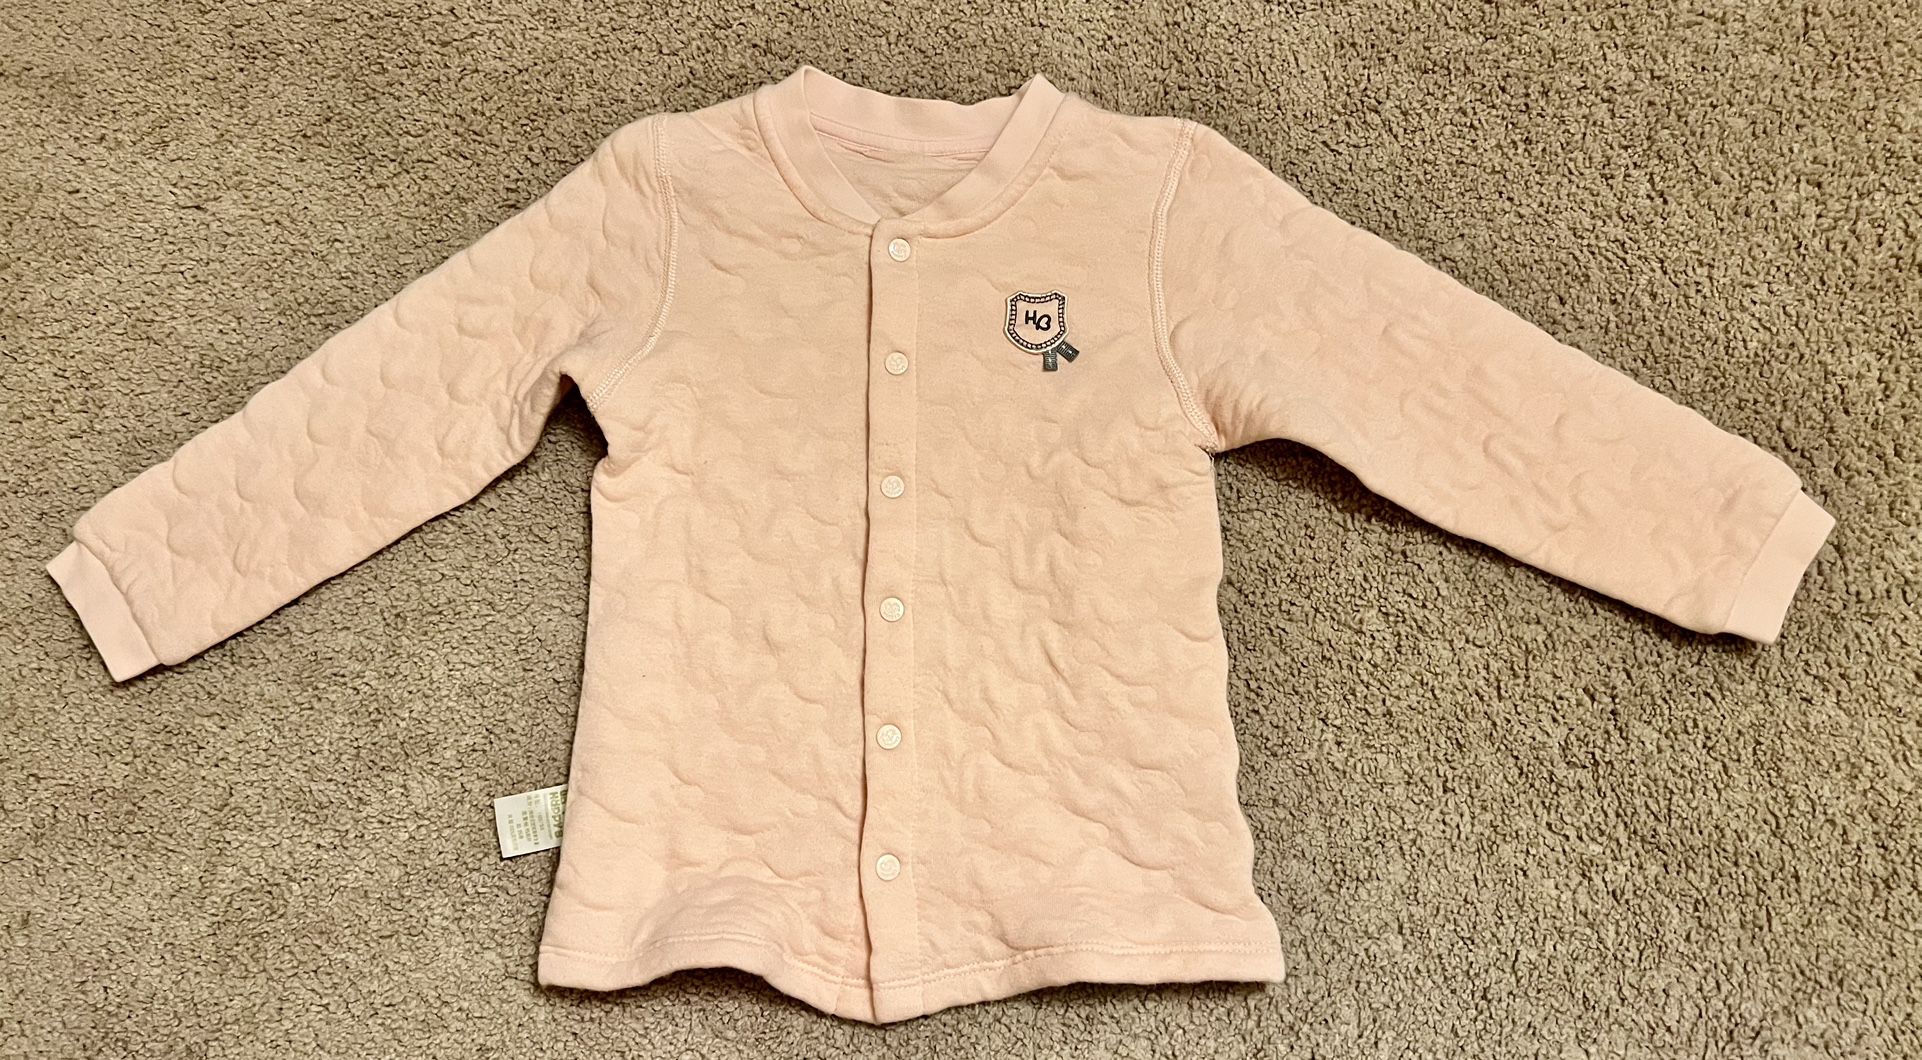 Toddler girl sweatshirt, size 3T